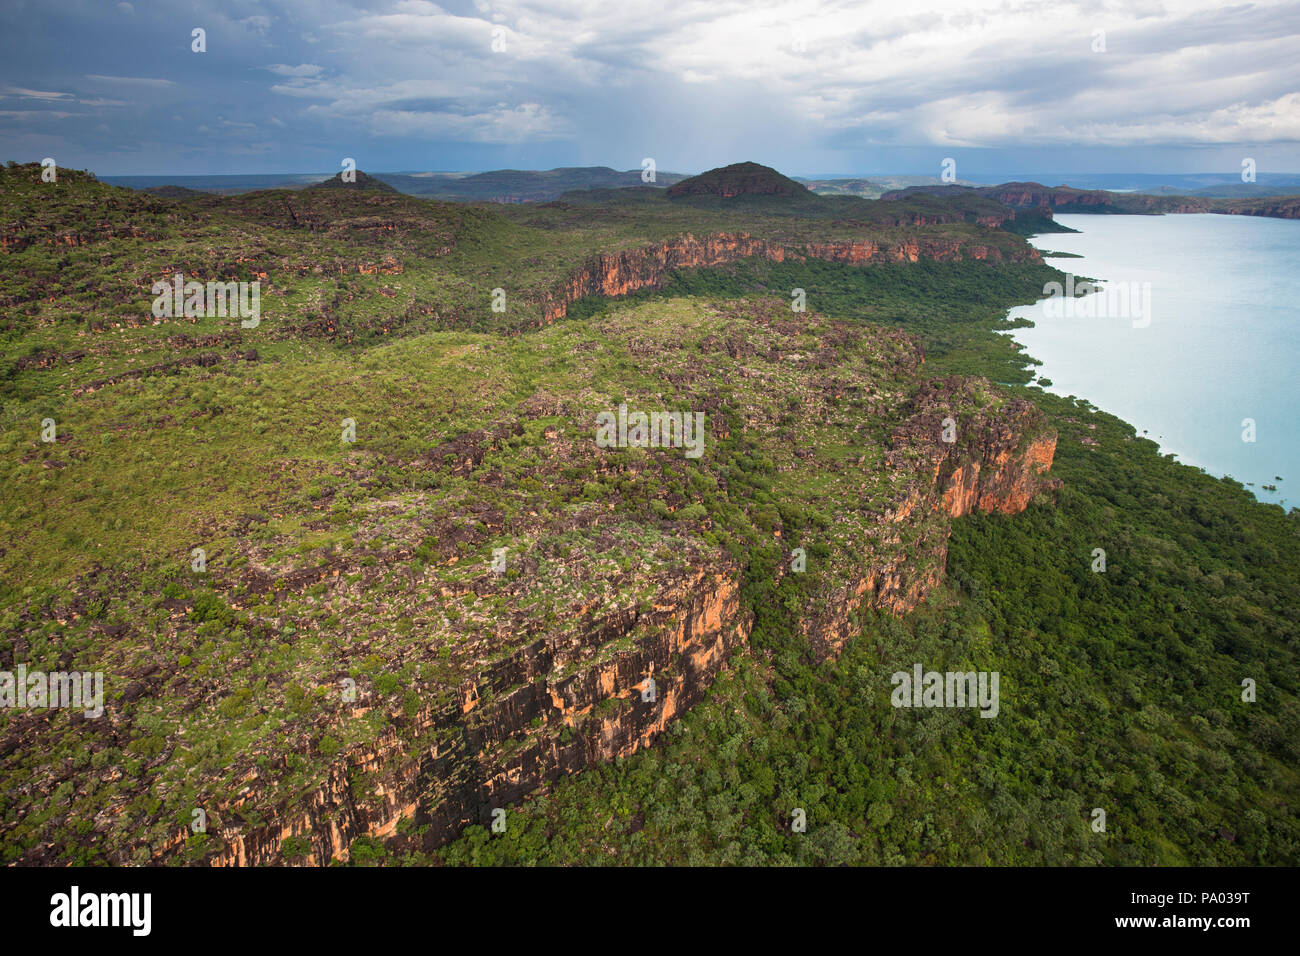 Vues aériennes de la Hunter River Valley dans le Kimberley, Australie occidentale Banque D'Images